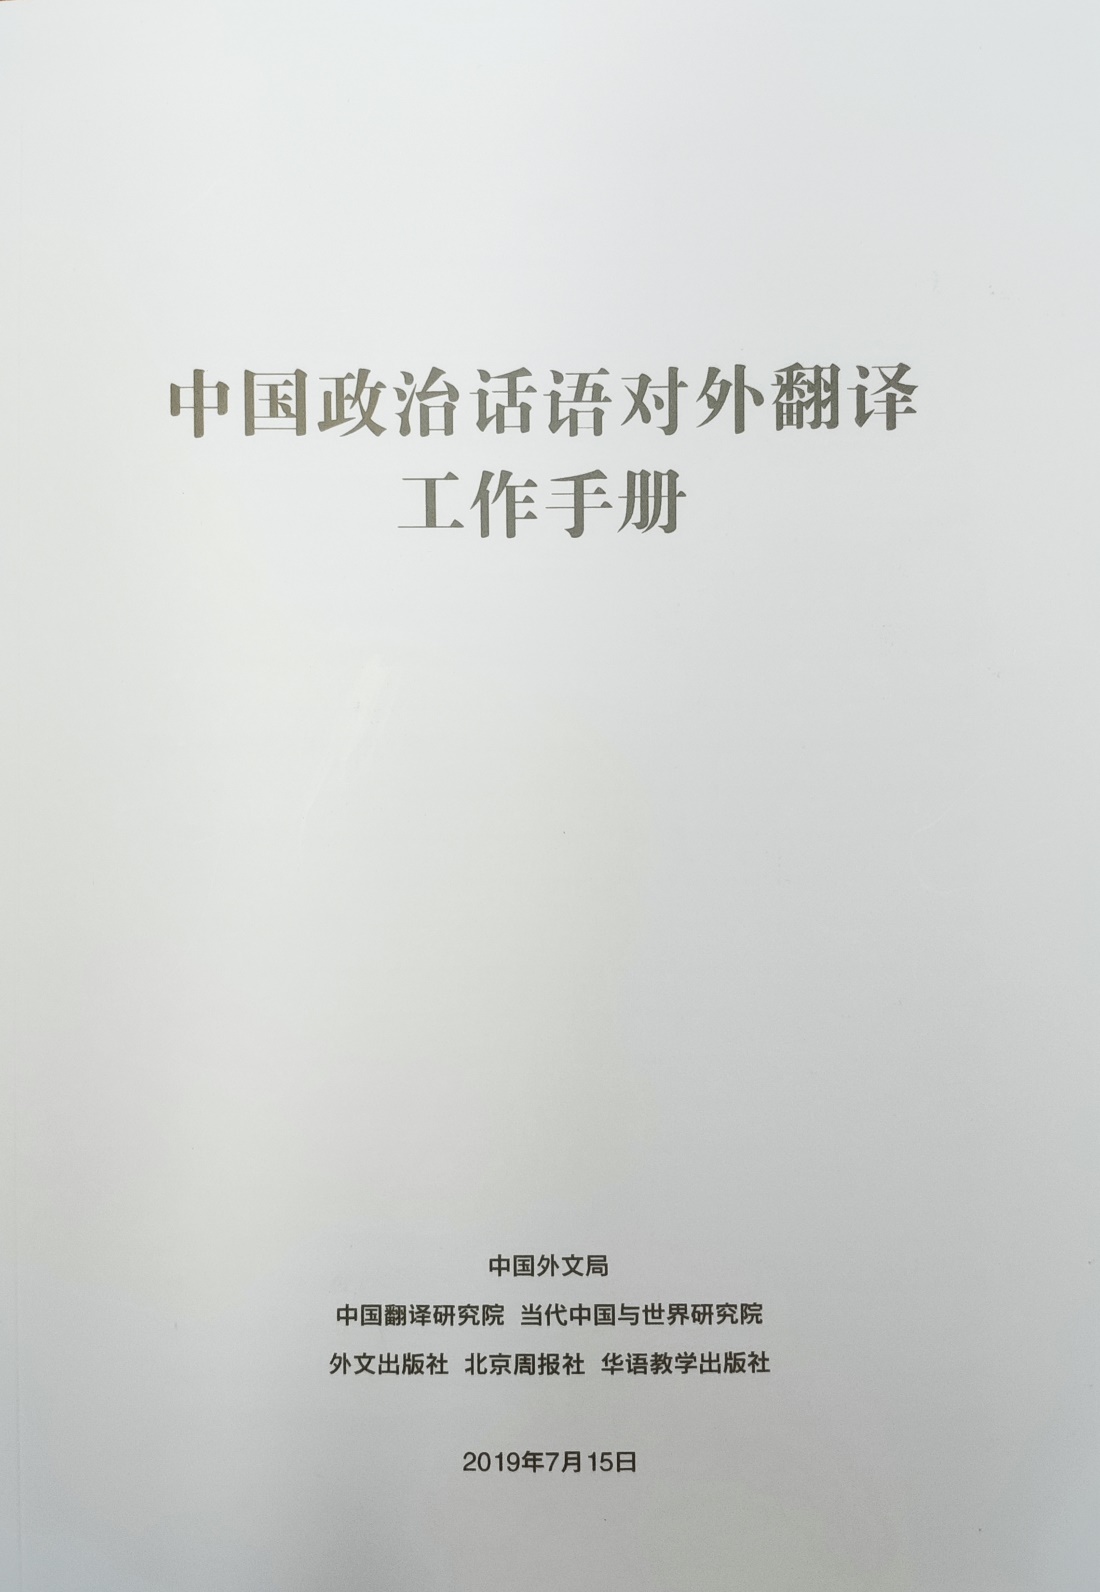 《中国政治话语对外翻译工作手册》12日正式发布(图1)